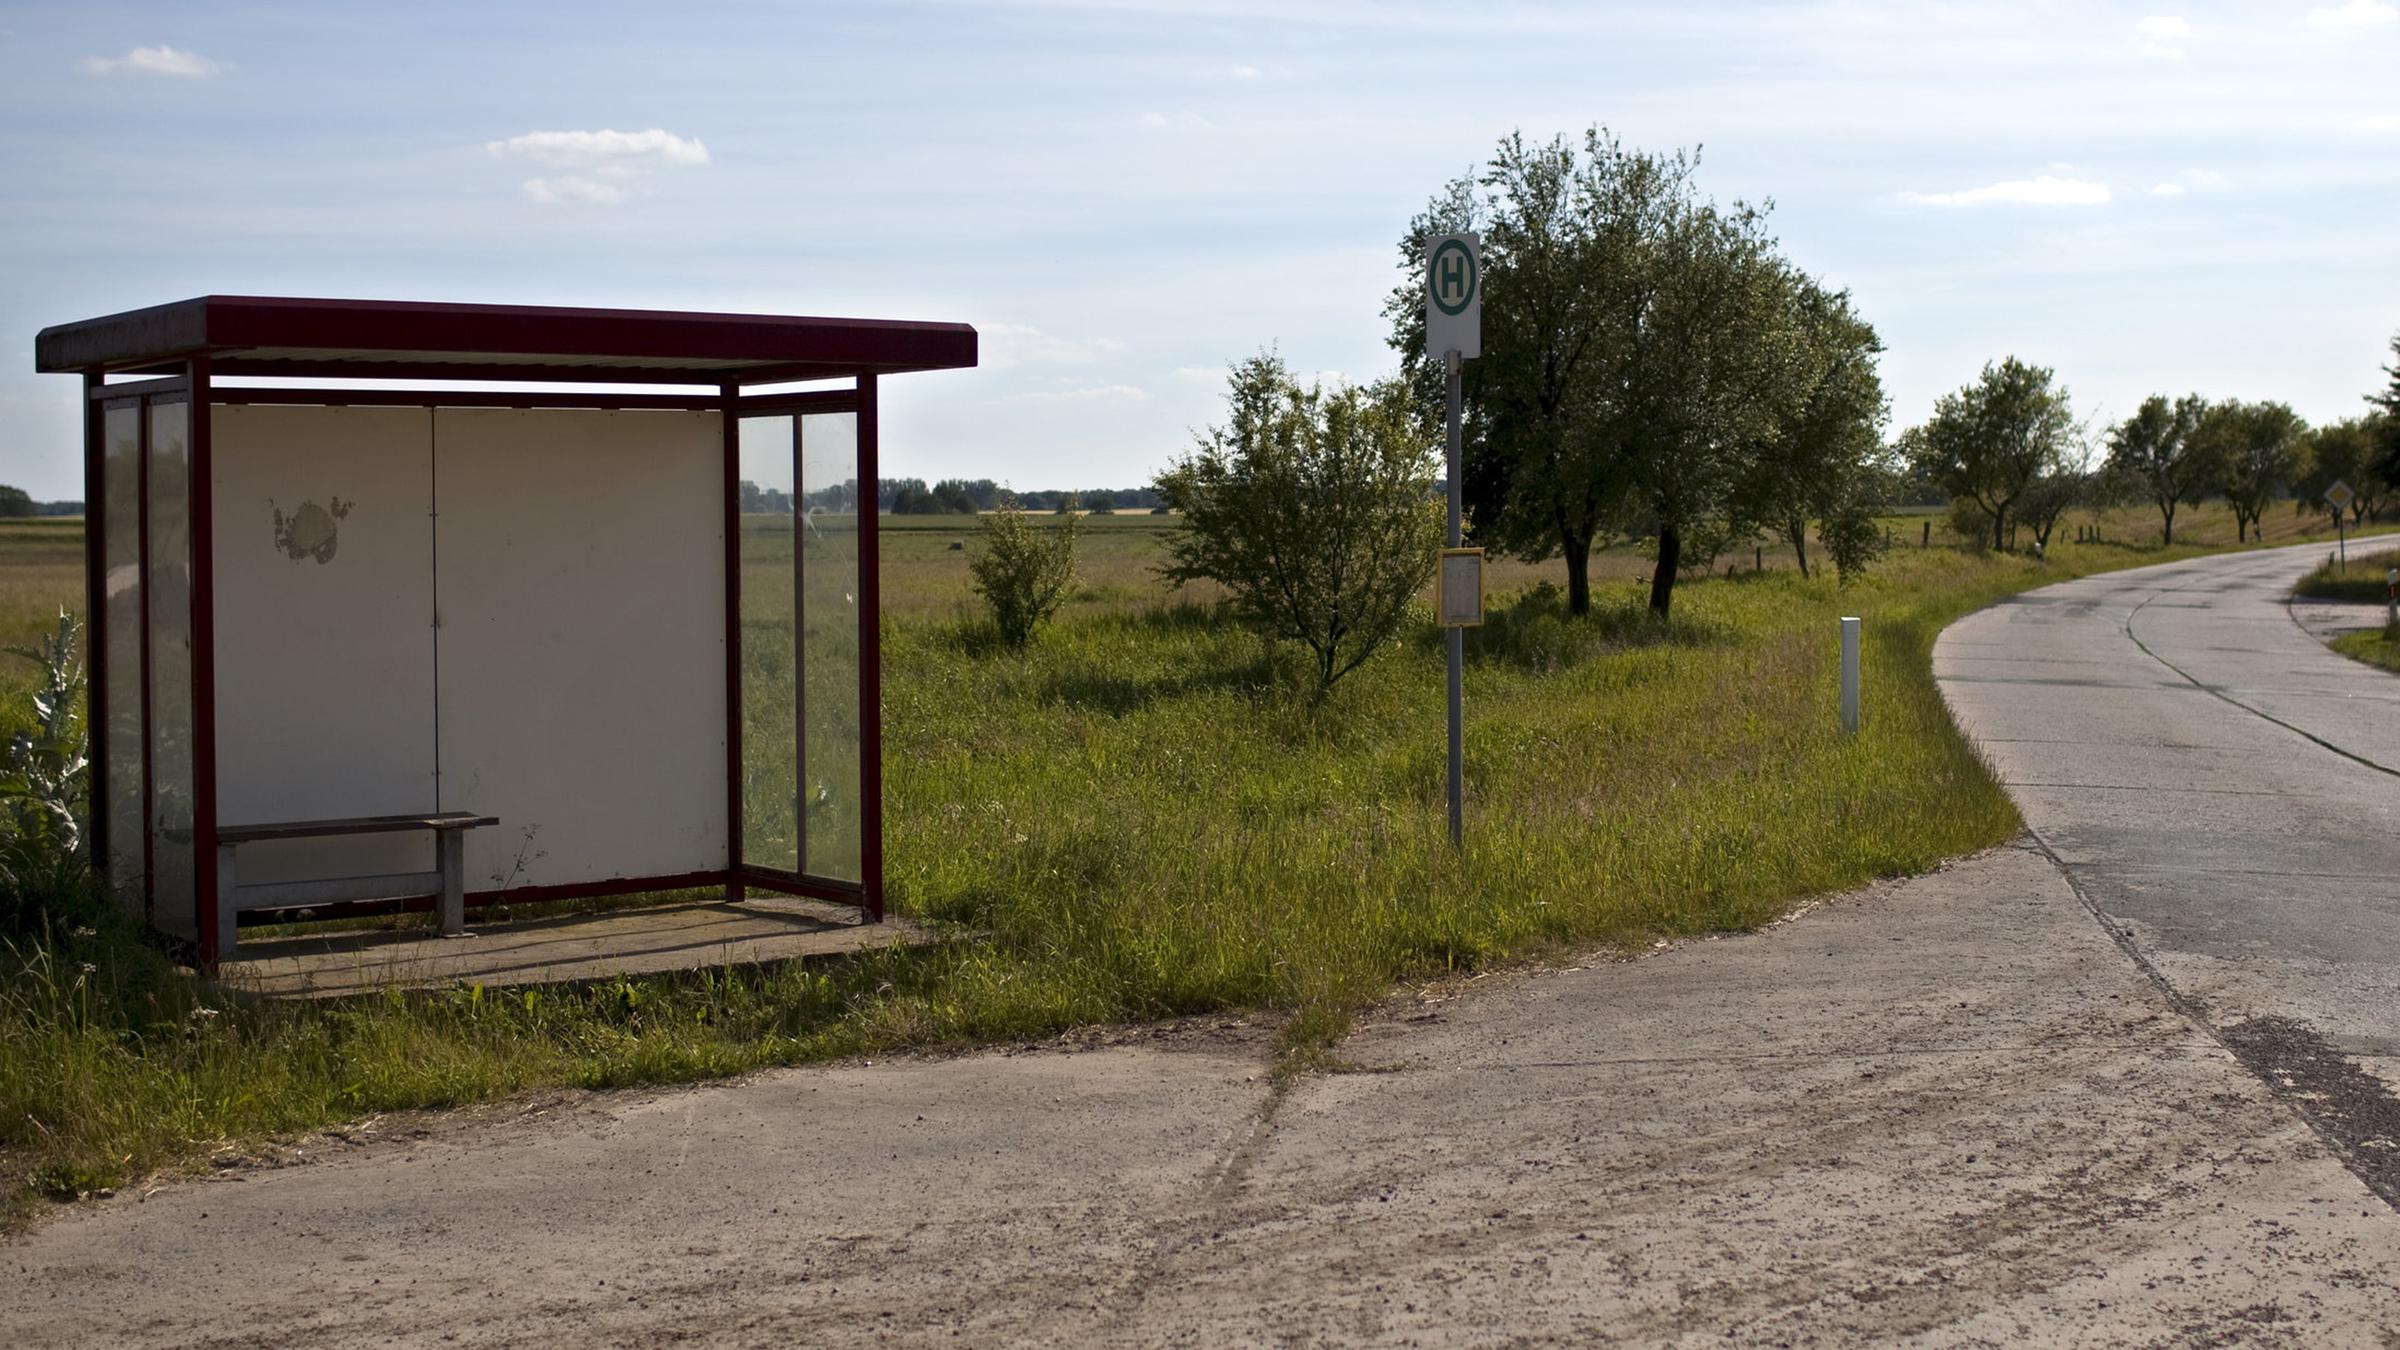 Archiv: Einsame Bushaltestelle auf dem Land